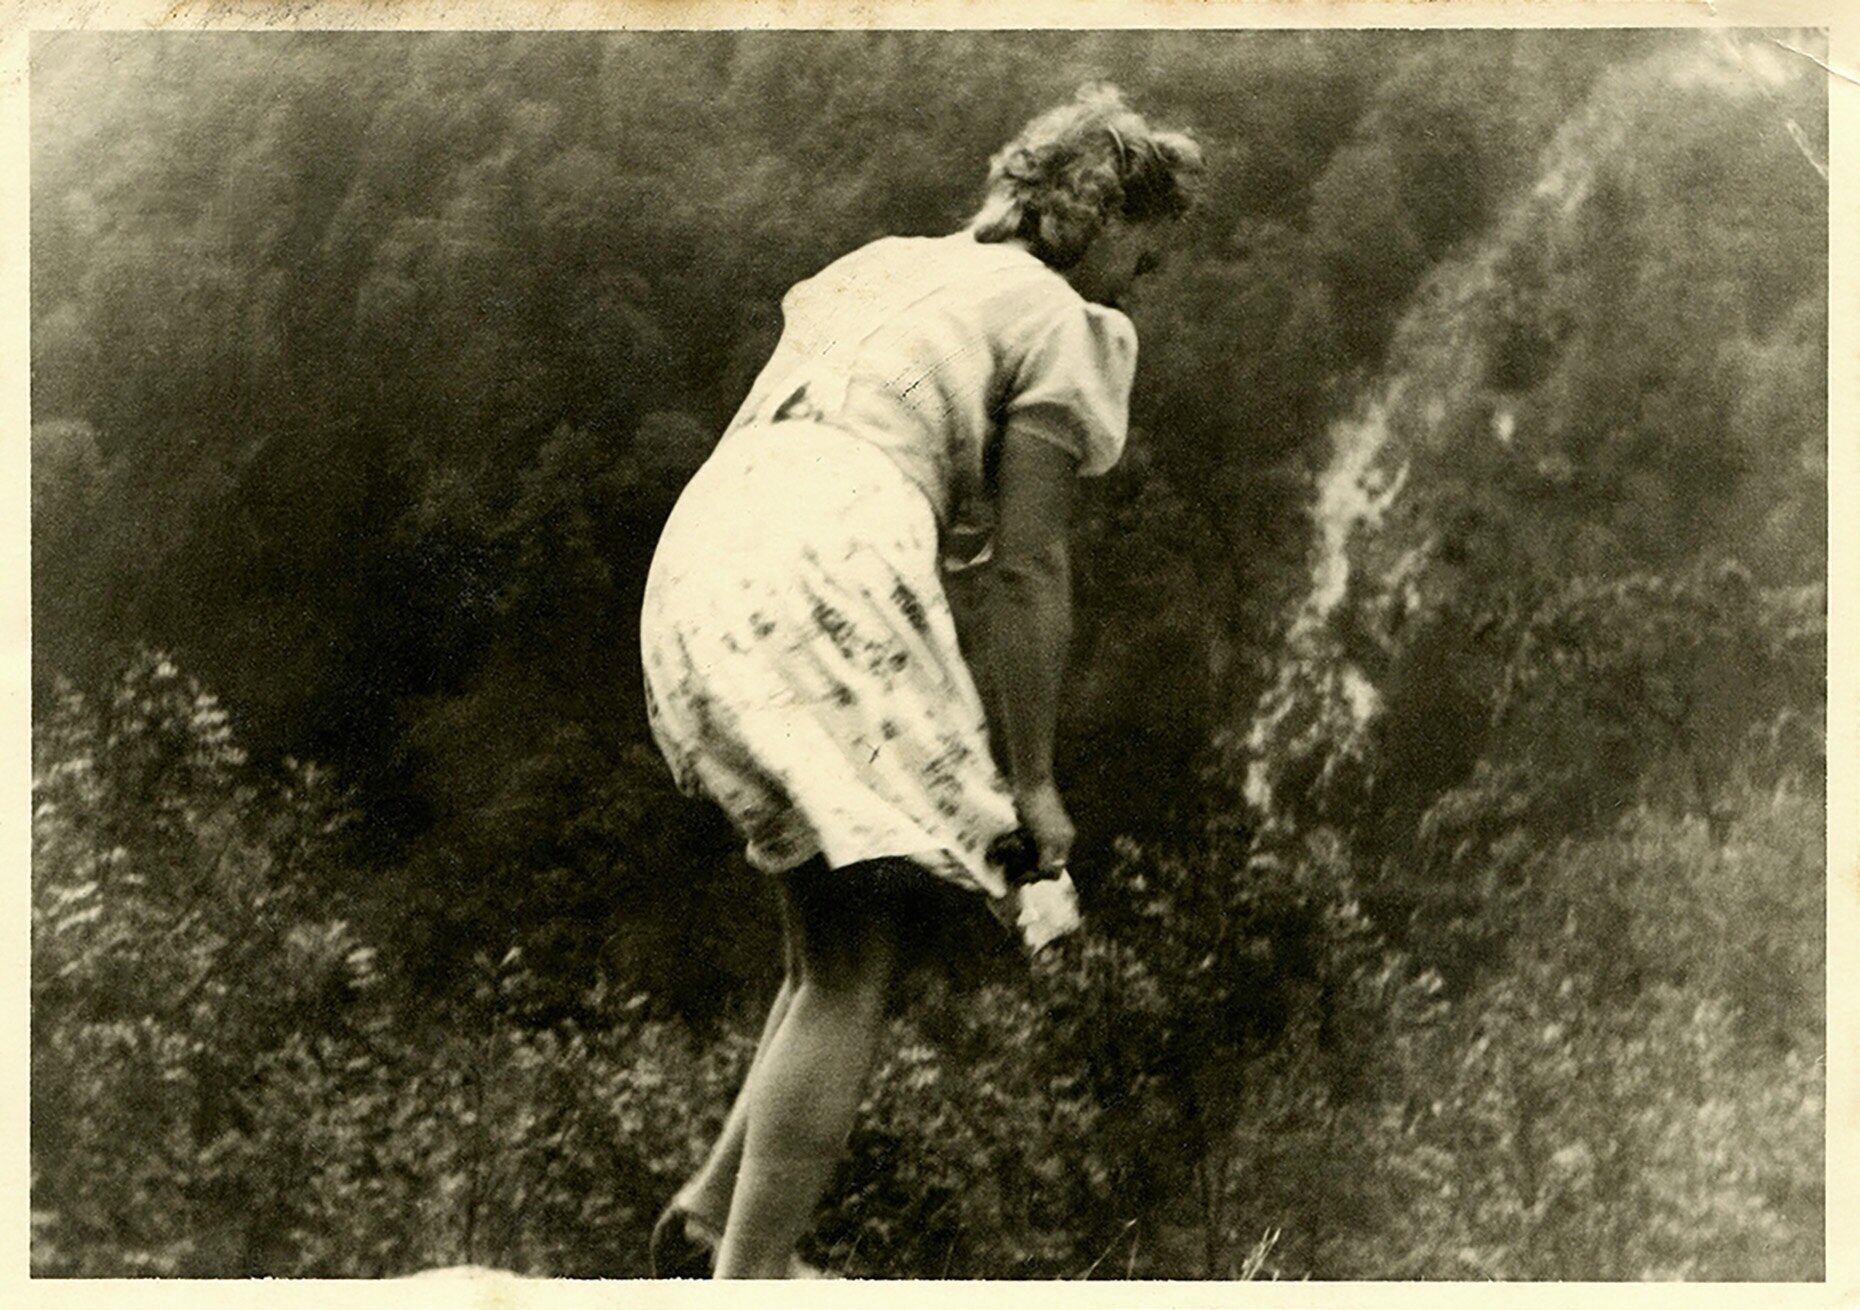 Lola, c. 1946